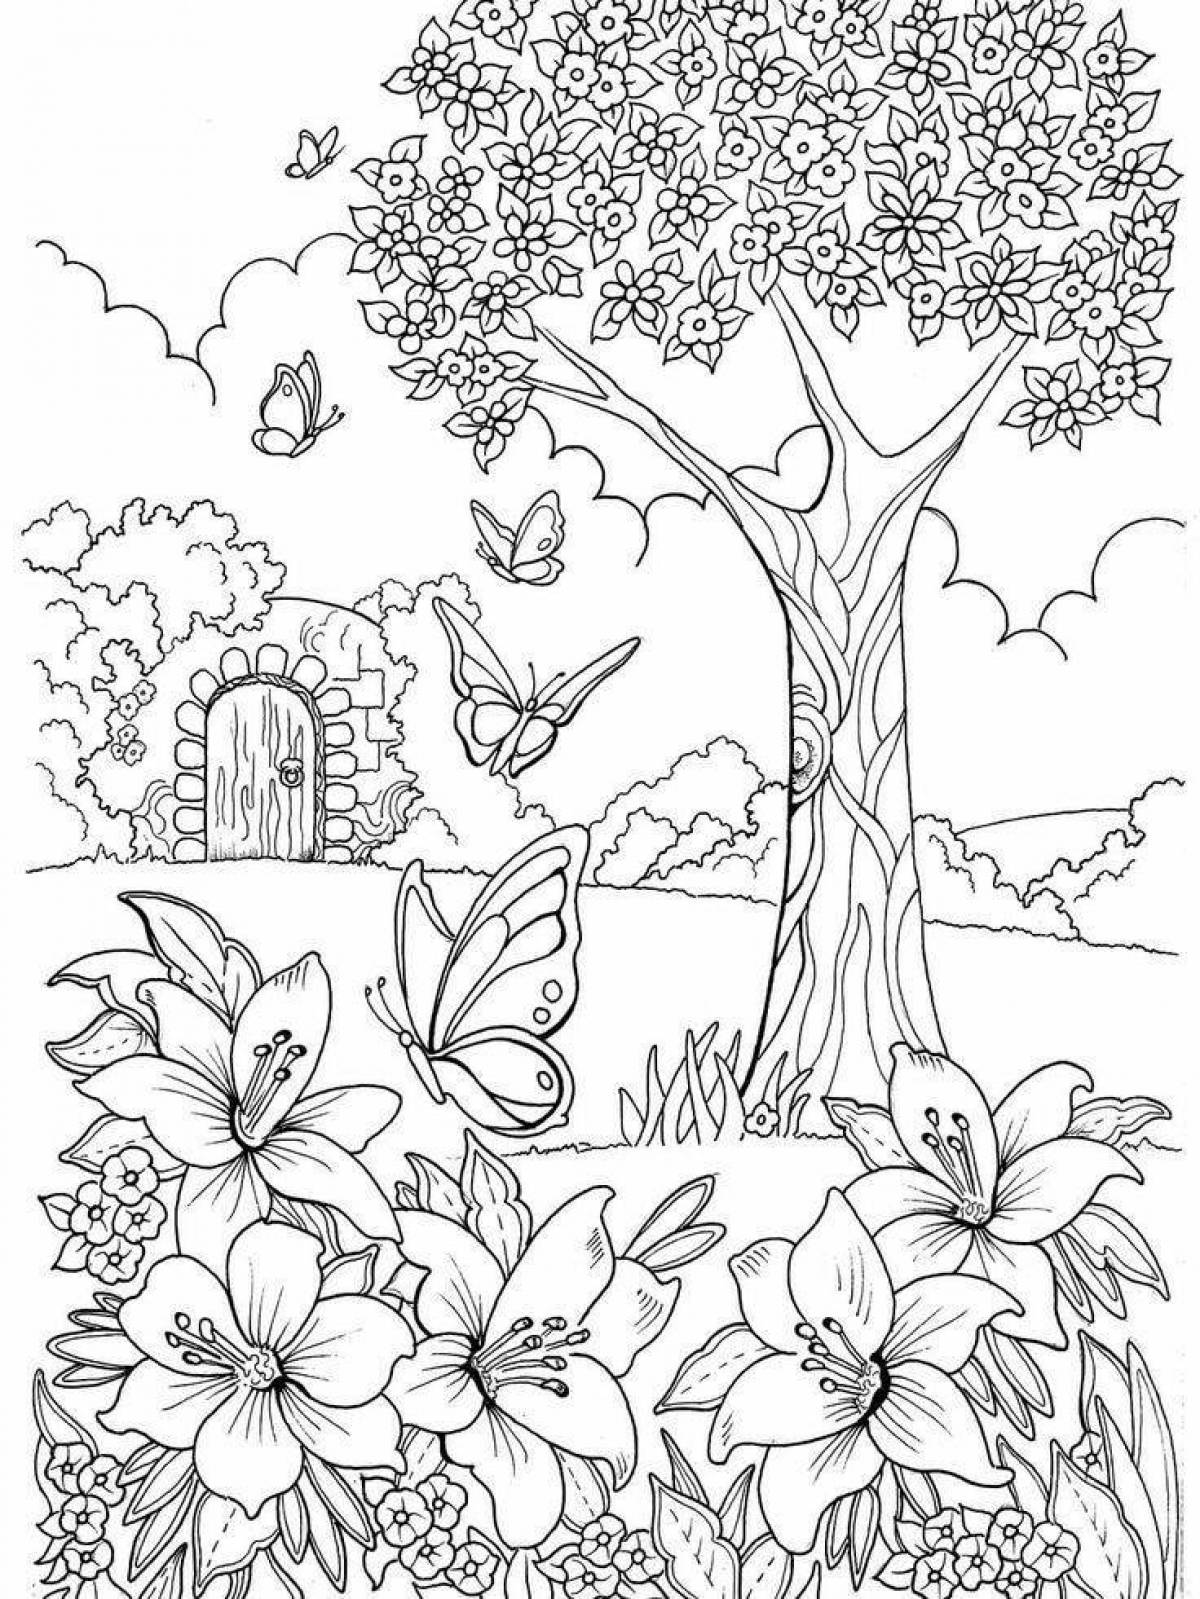 Brilliant Garden of Eden coloring book